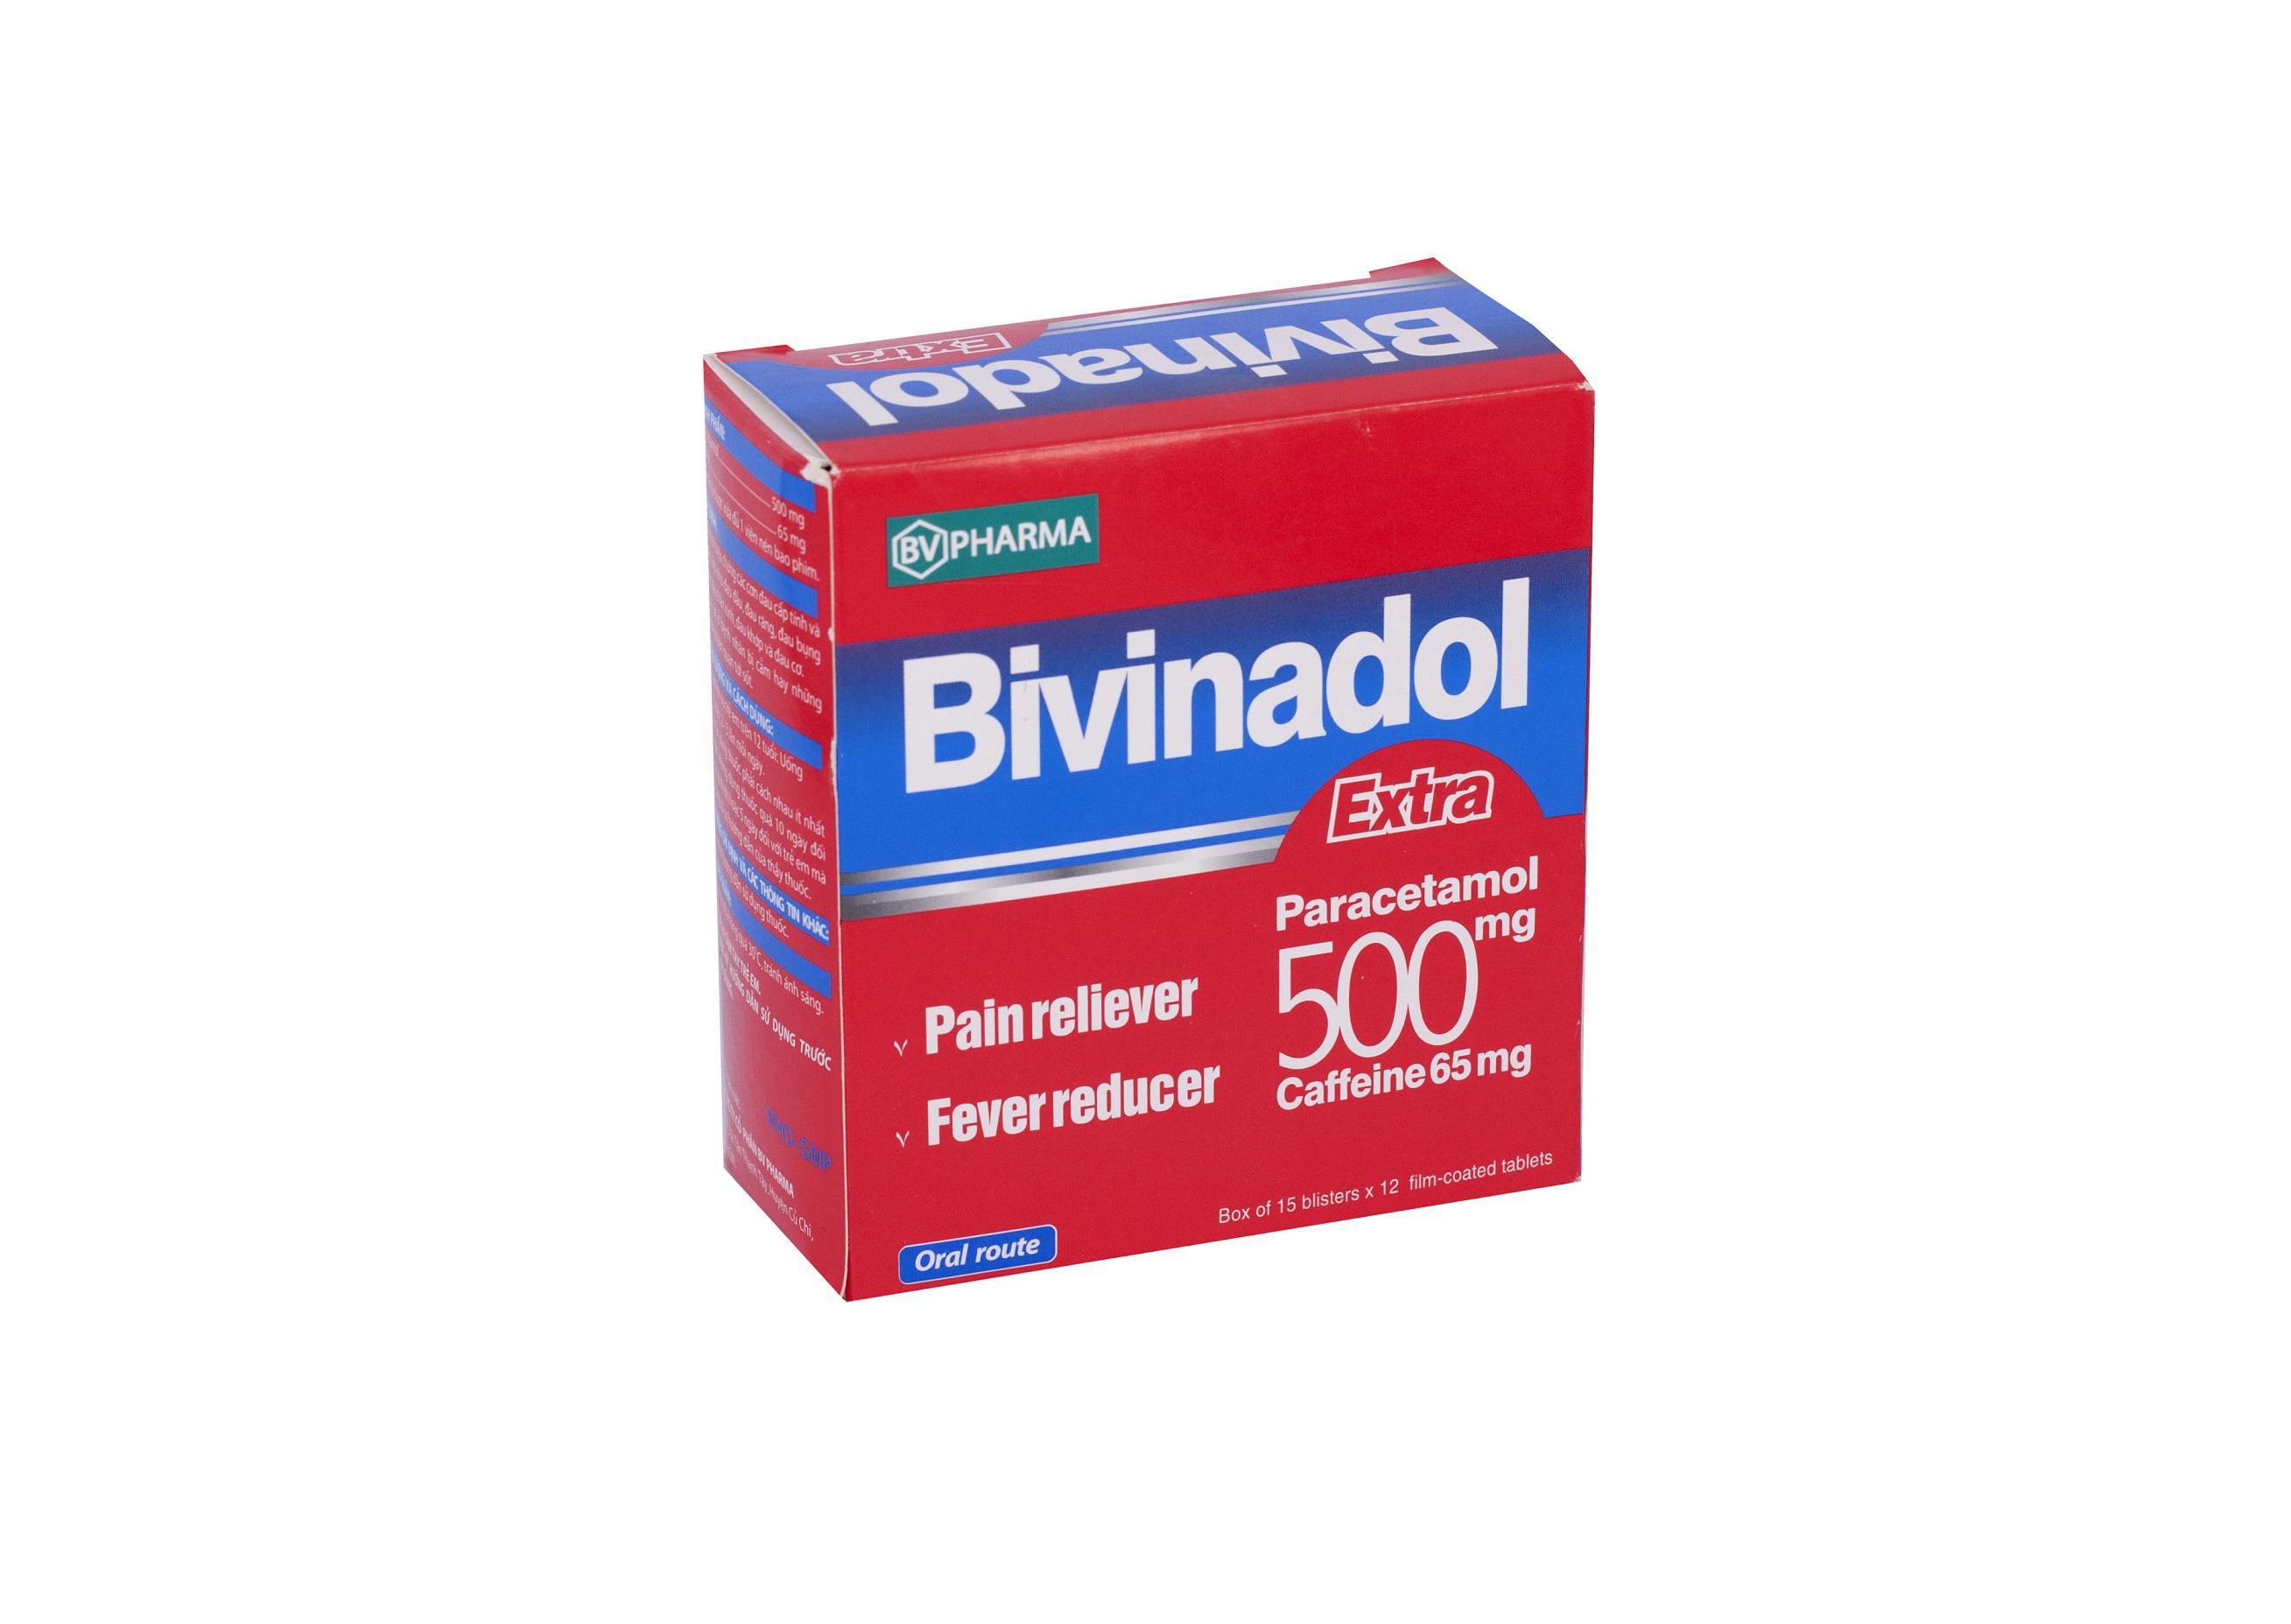 Bivinadol 500 Extra (Paracetamol, Cafein) BV Pharma (H/180v)